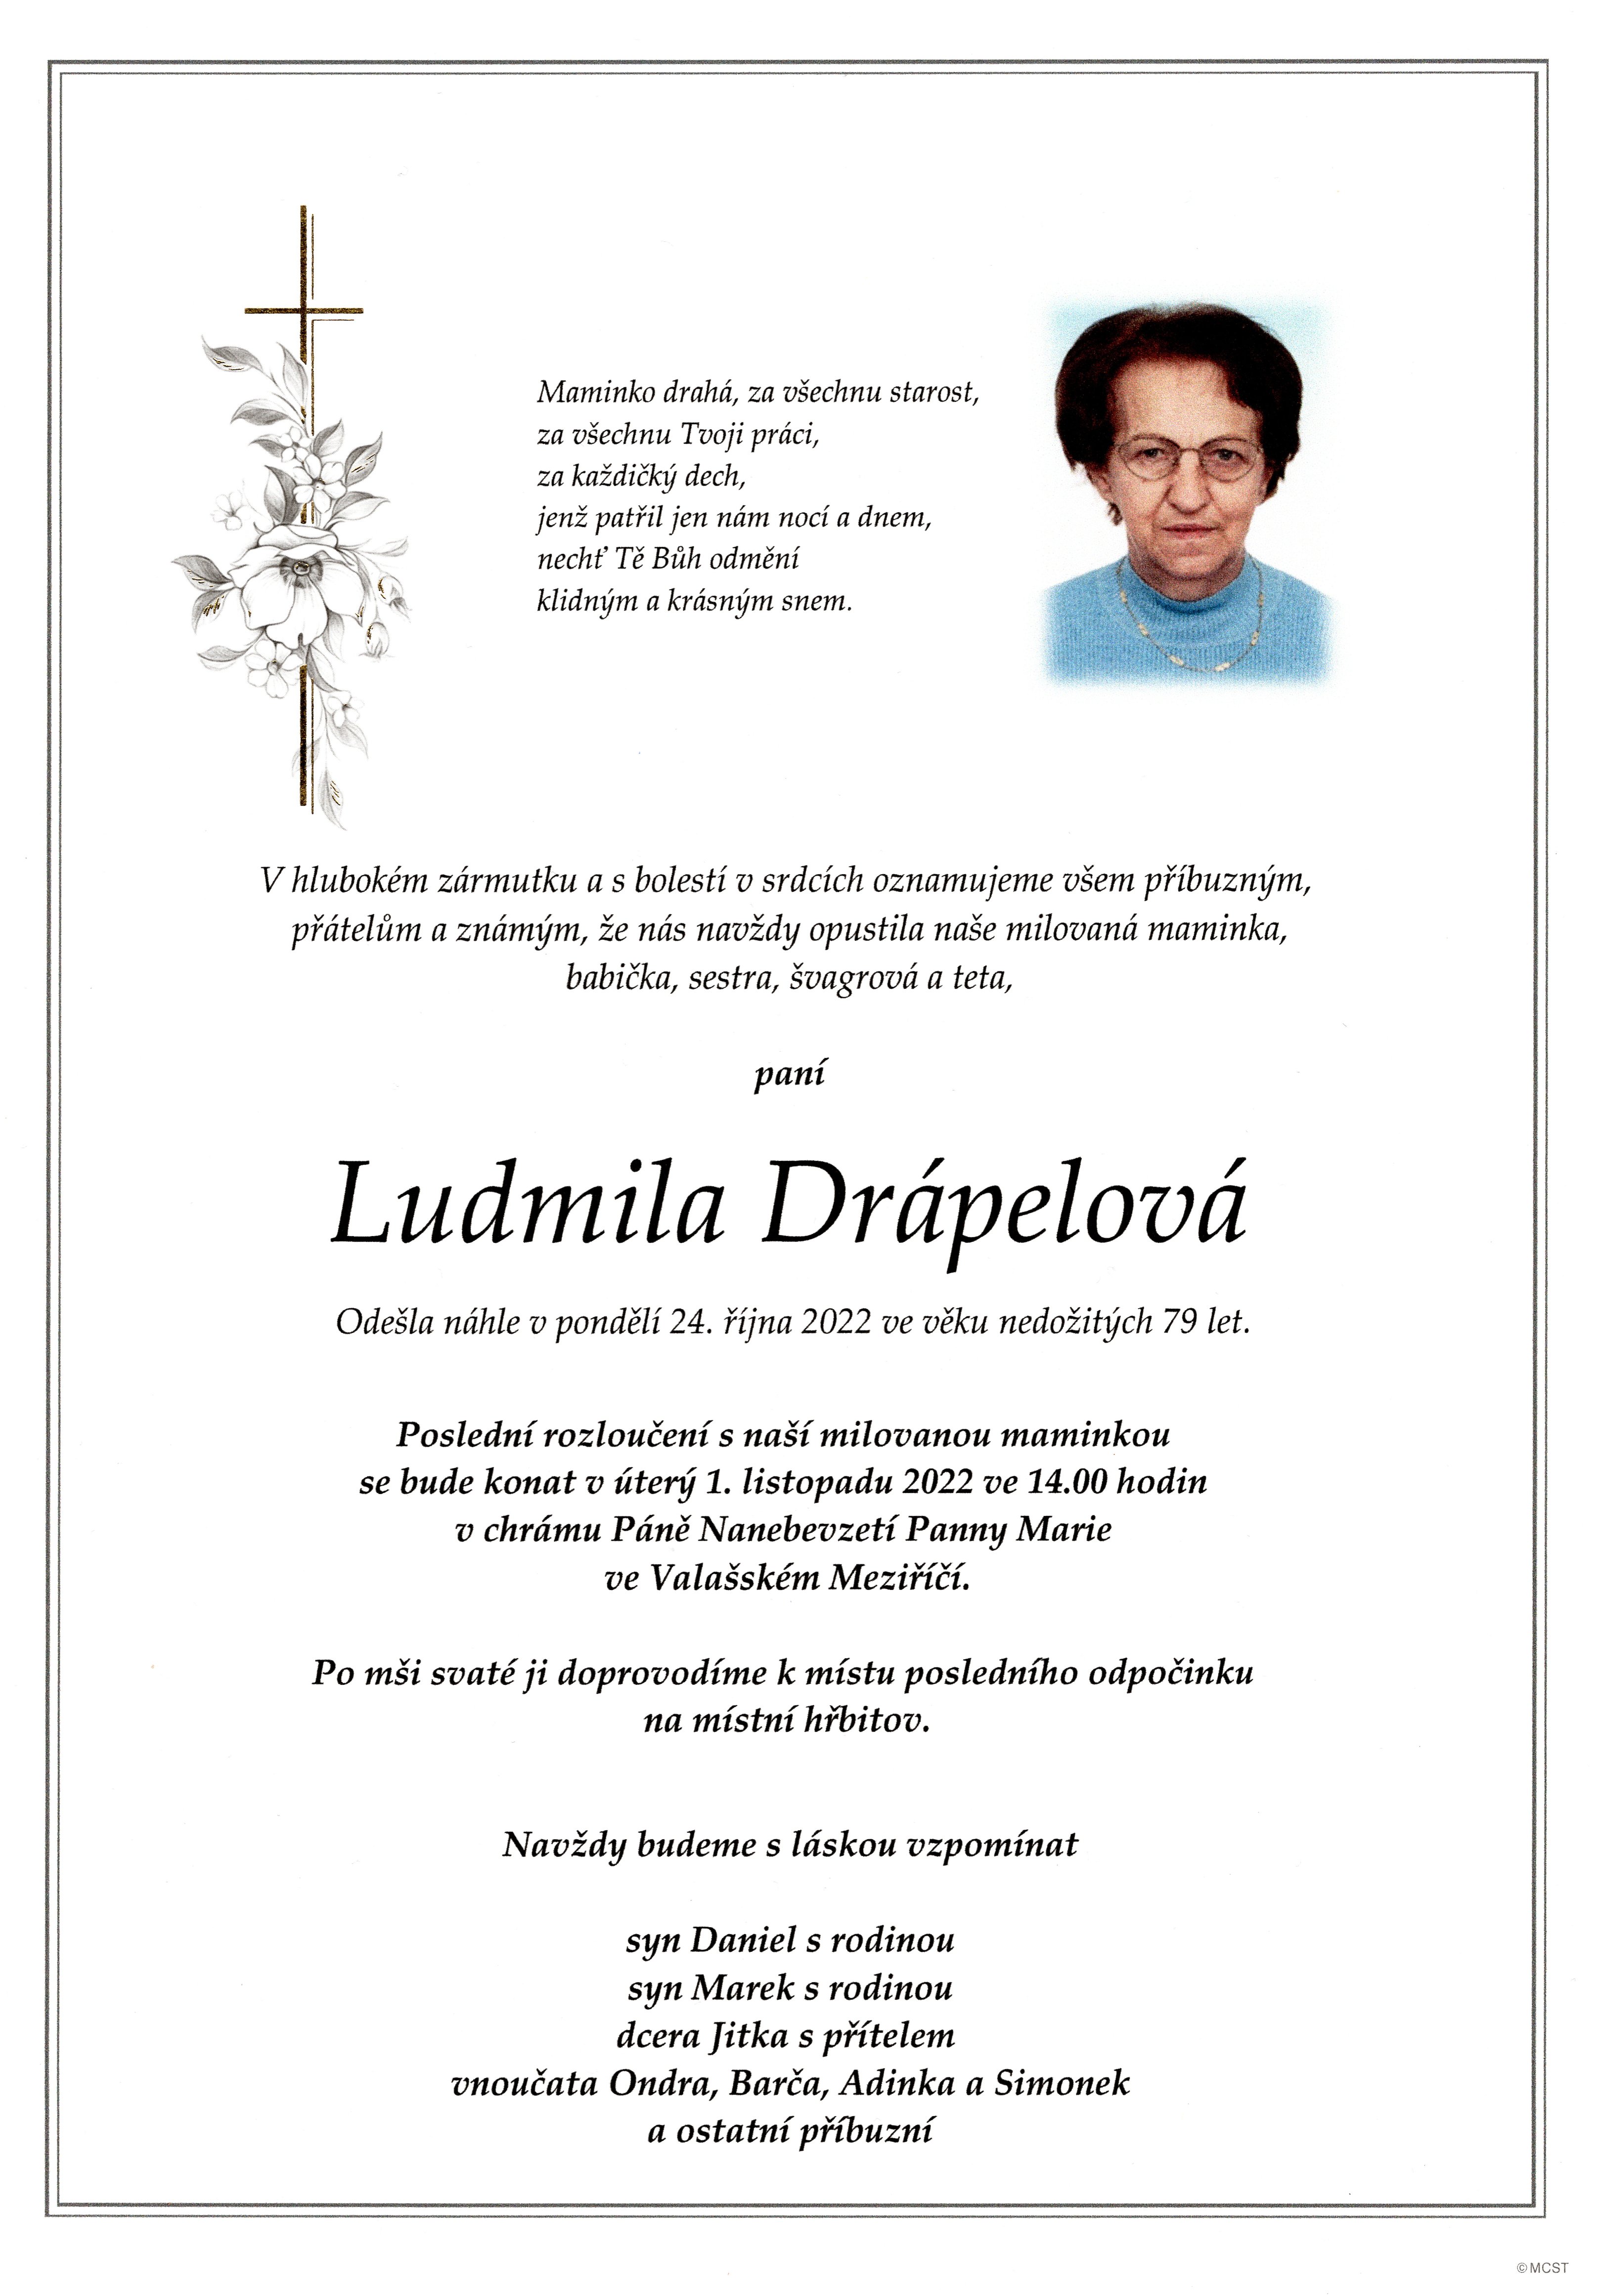 Ludmila Drápelová